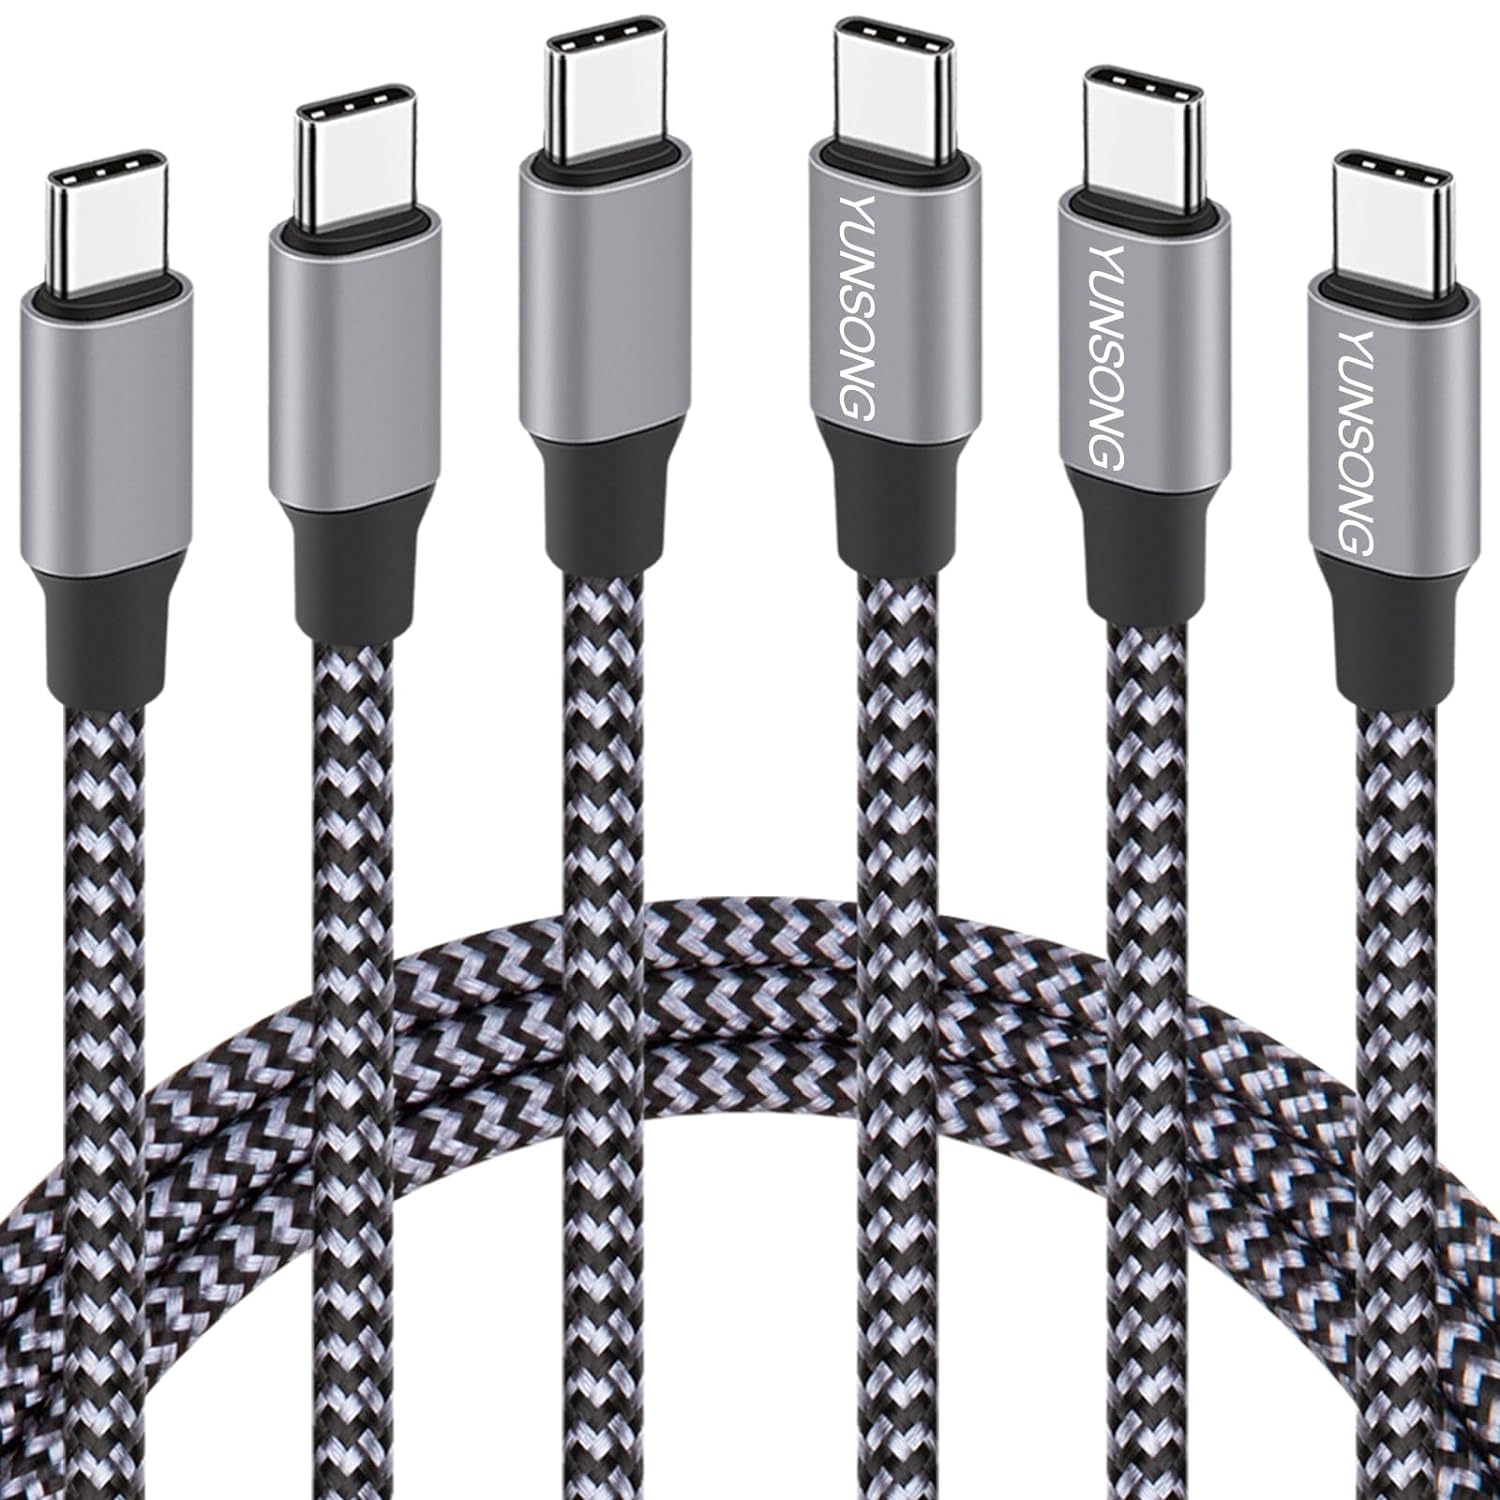 三根 YUNSONG USB C Charger Cable, New Nylon Braided USB C to USB C Cable 3PACK 6FT